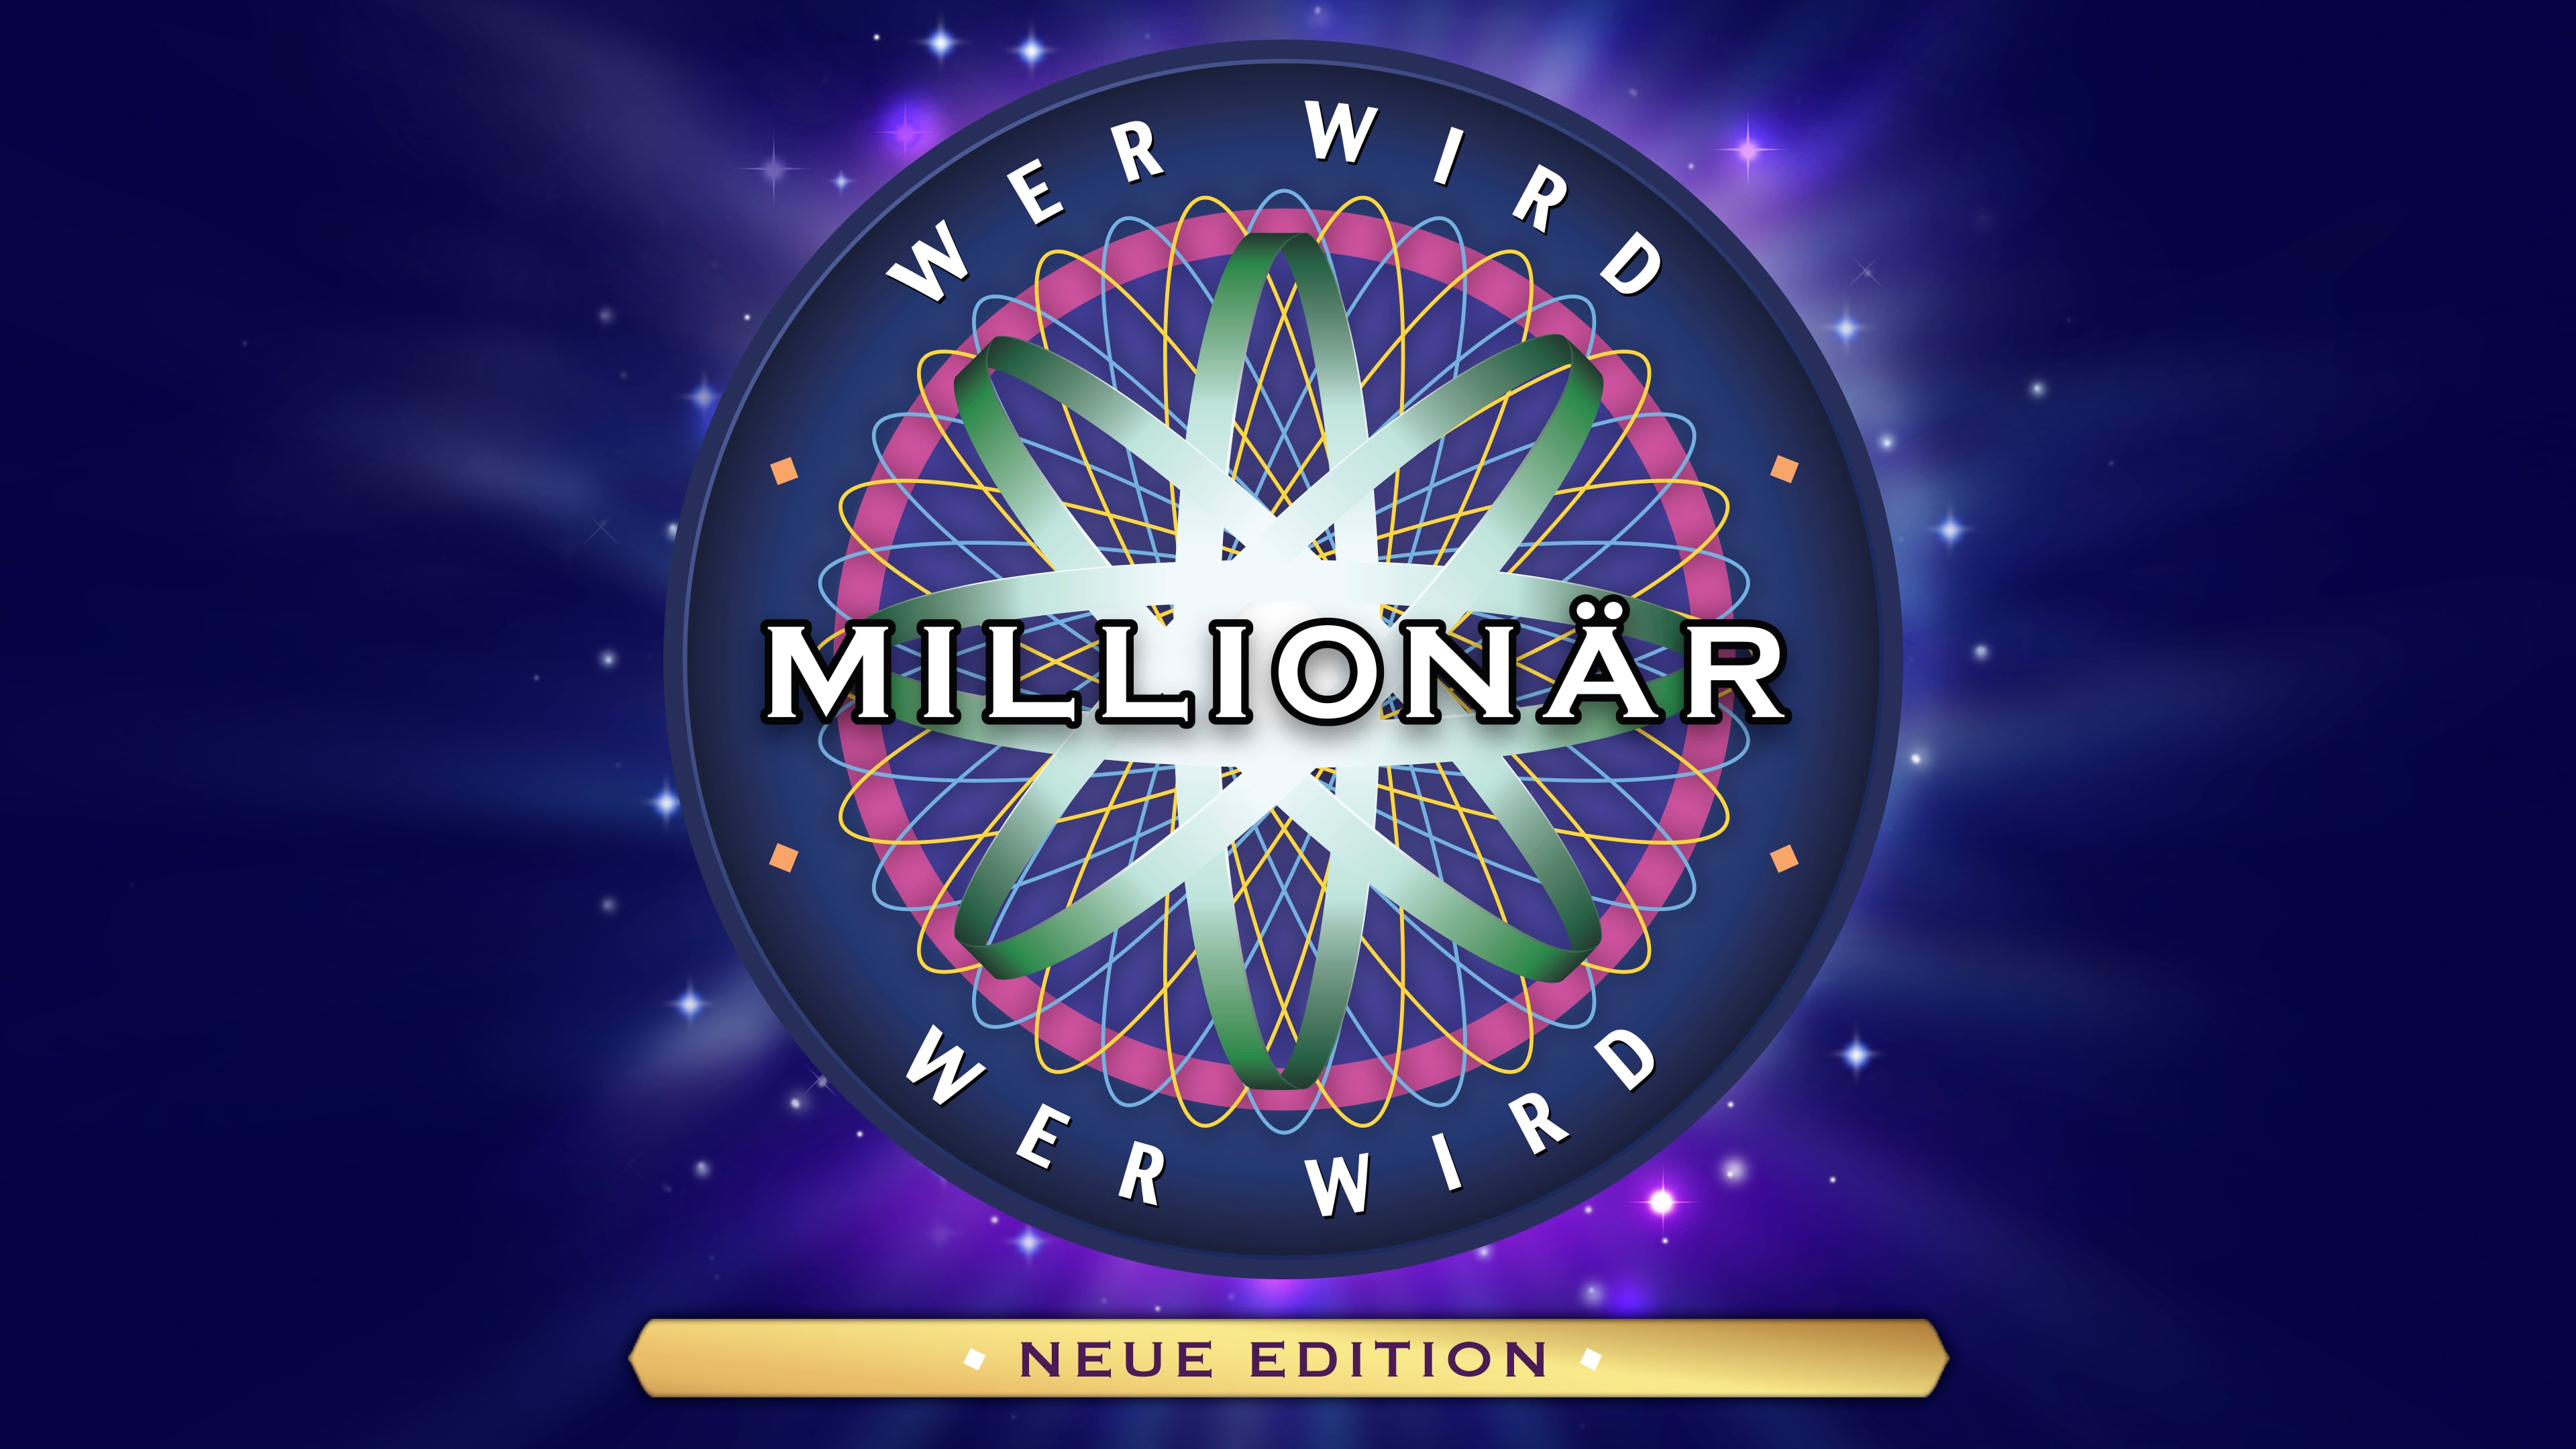 Wer wird Millionär? - Neue Edition